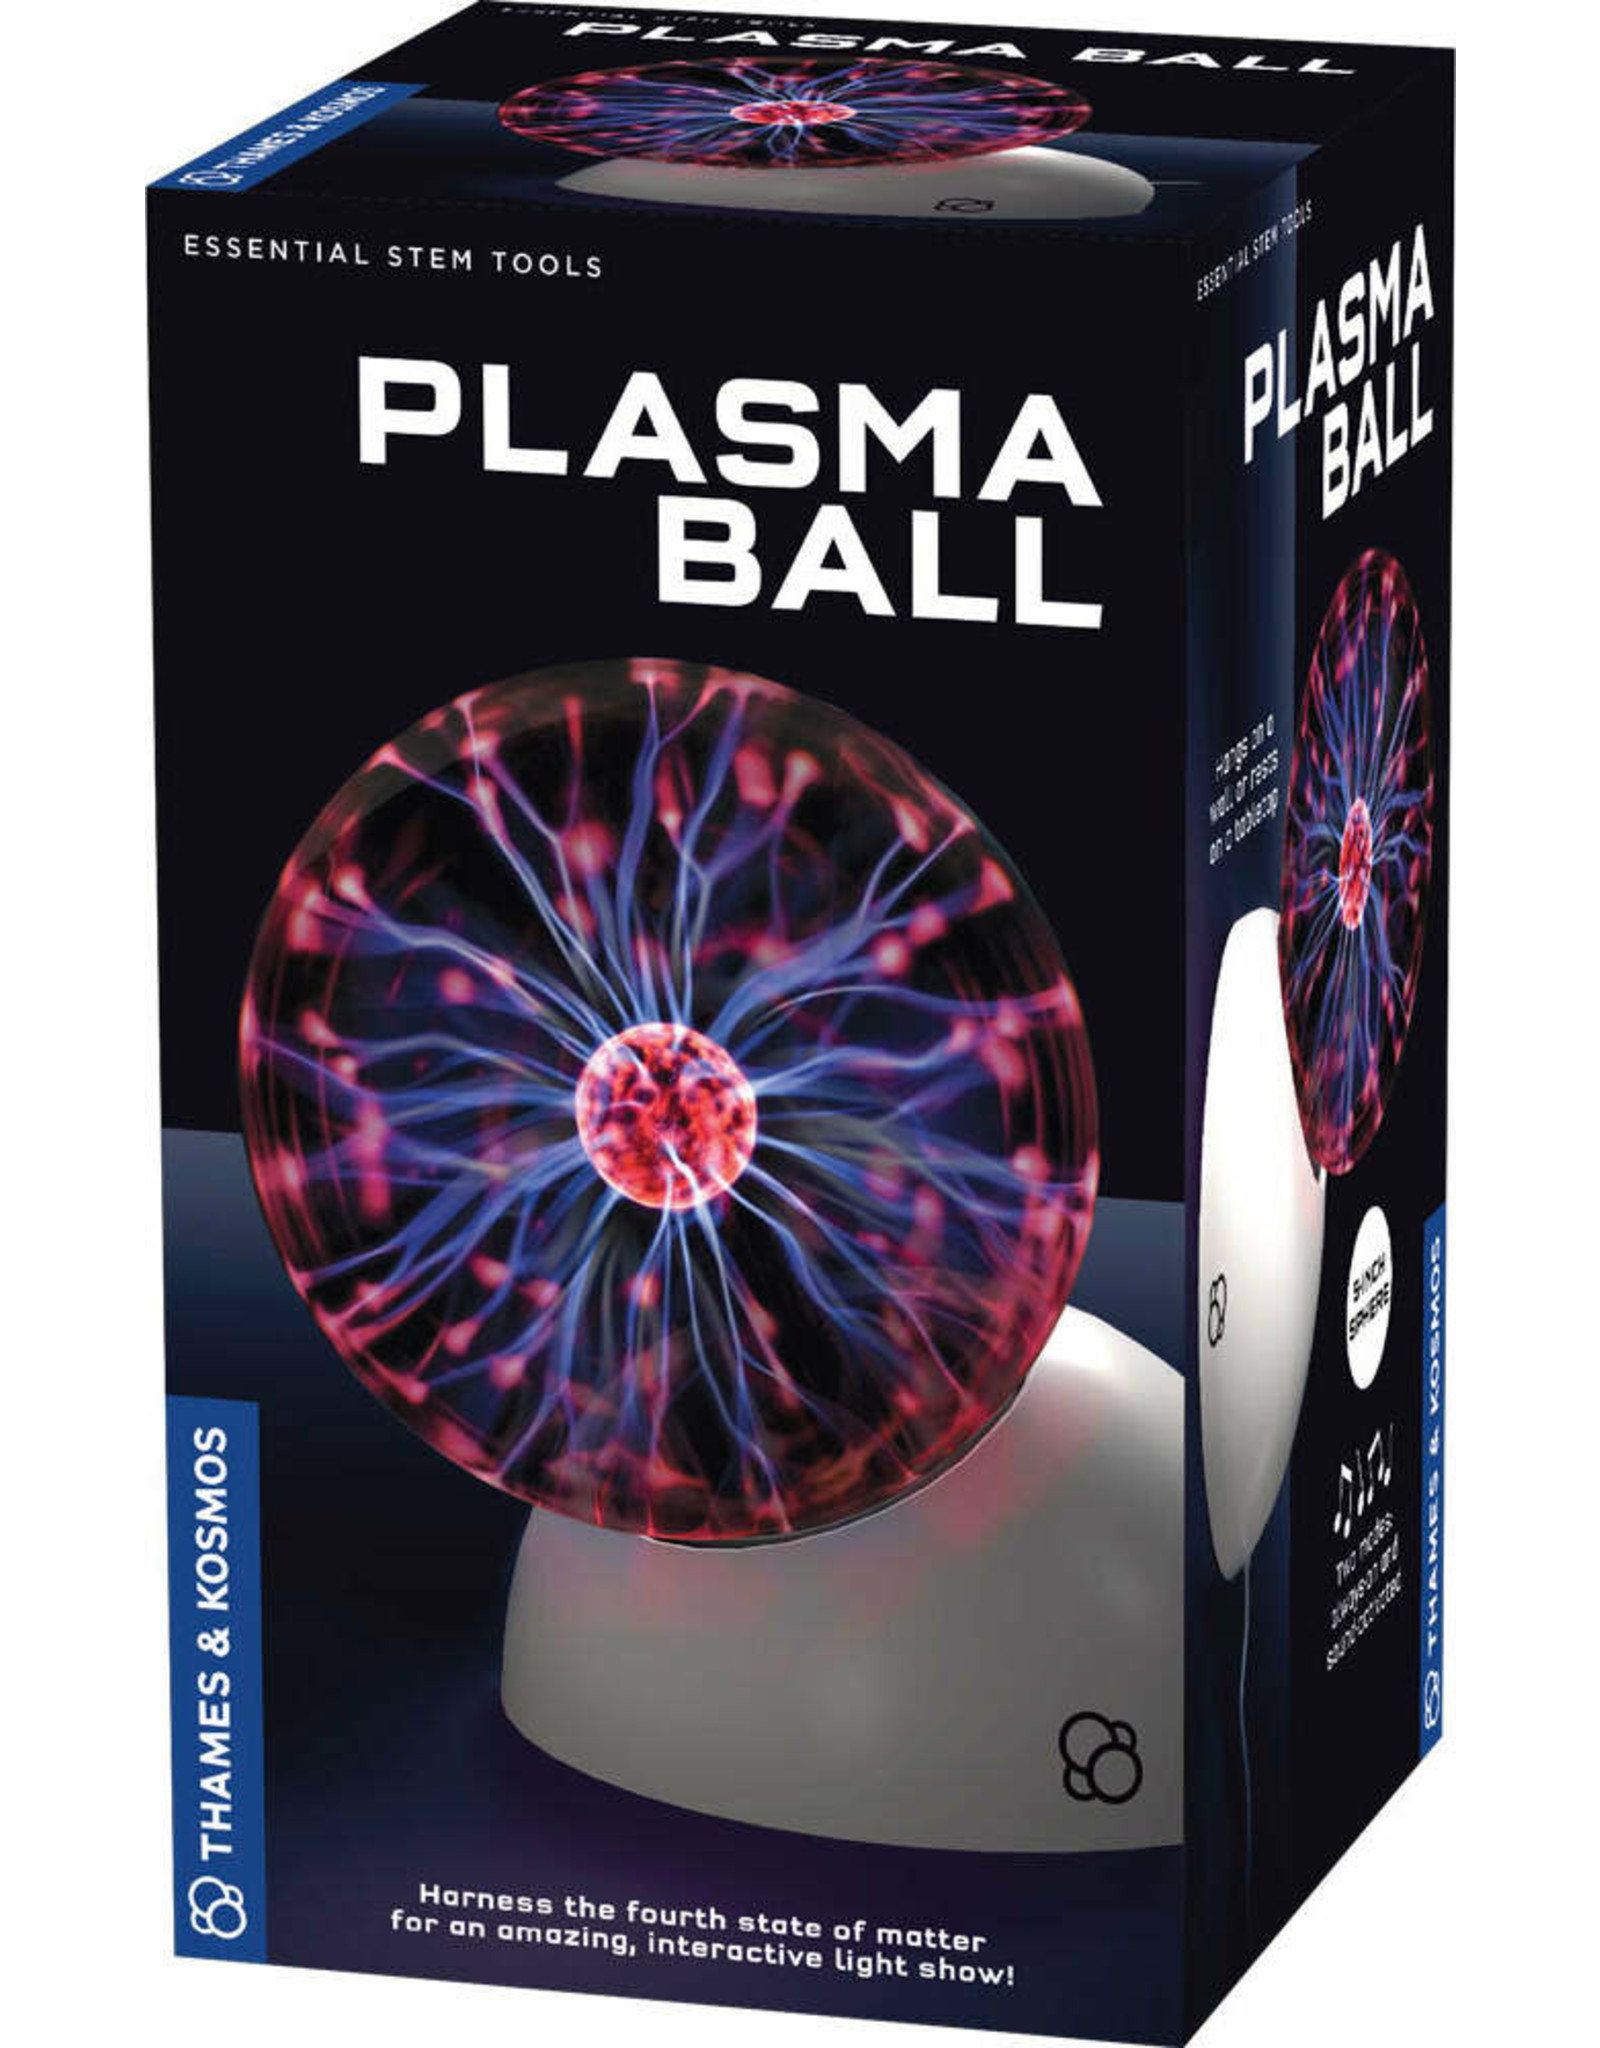 Thames & Kosmos The Thames & Kosmos Plasma Ball